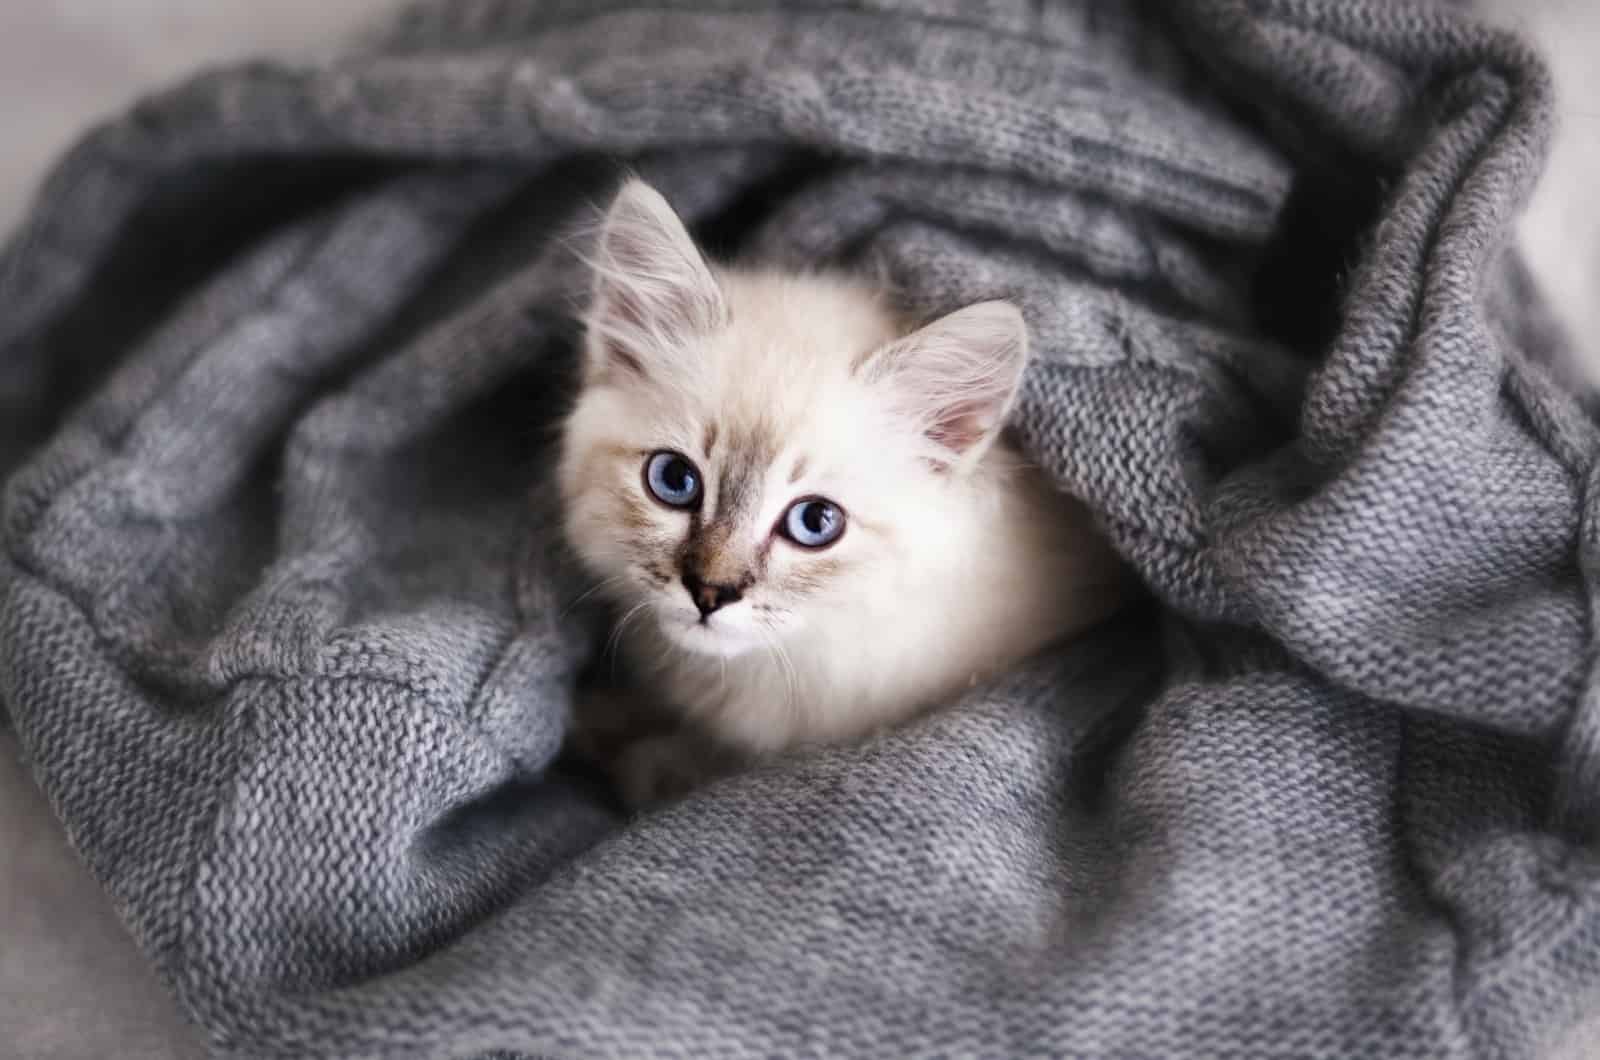 cute kitten wrapped up in blanket